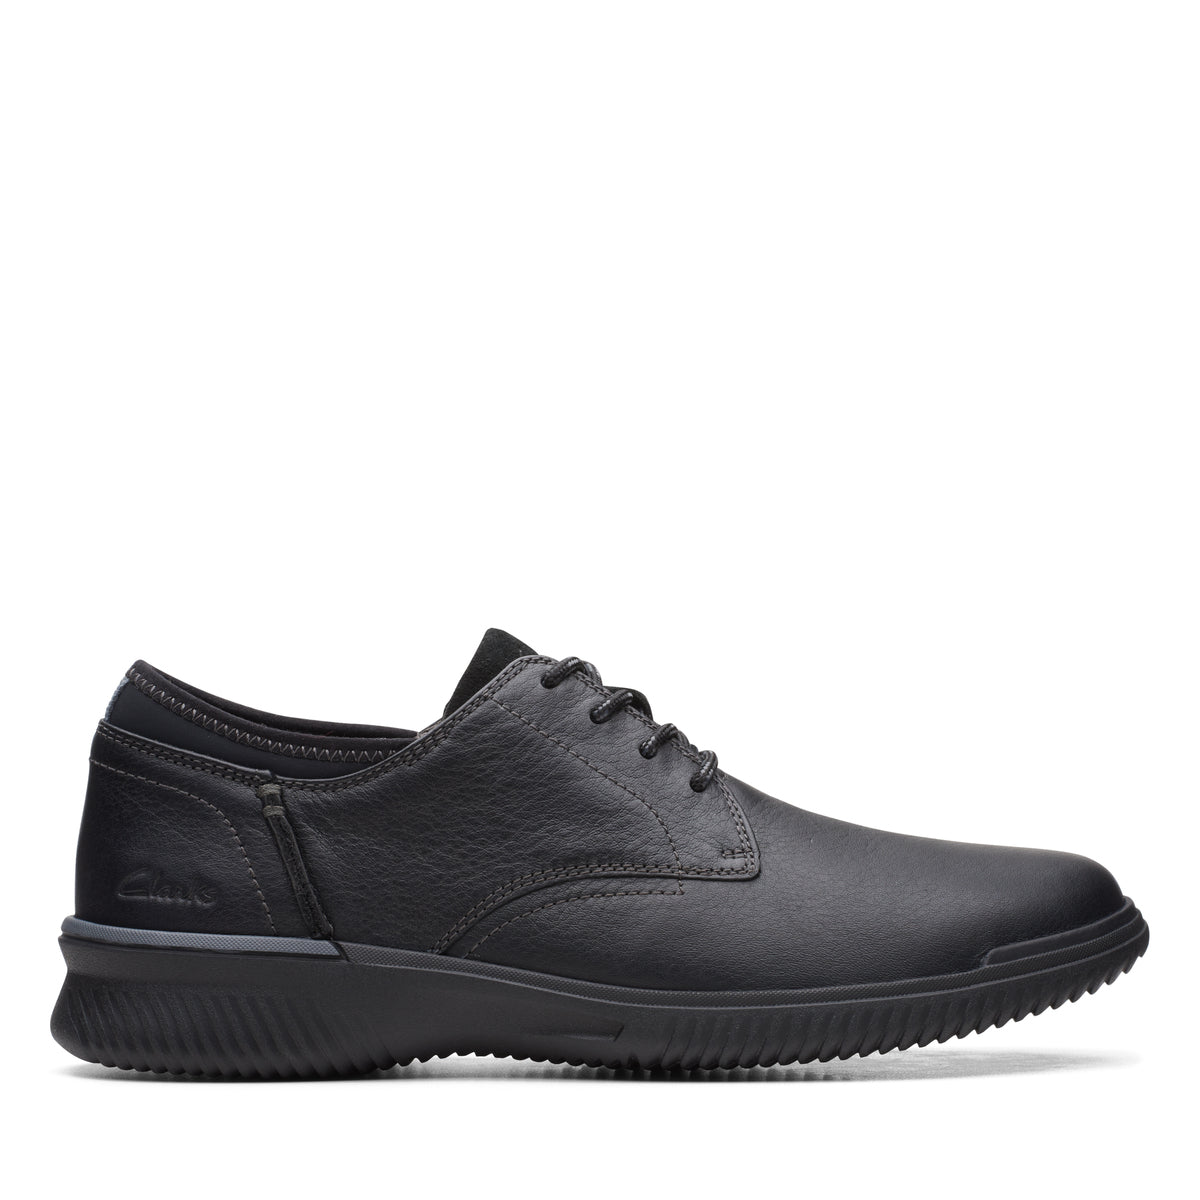 Zapatos Derby De La Marca Clarks Para Hombre Modelo Donaway Plain Black Leather En Color Negro